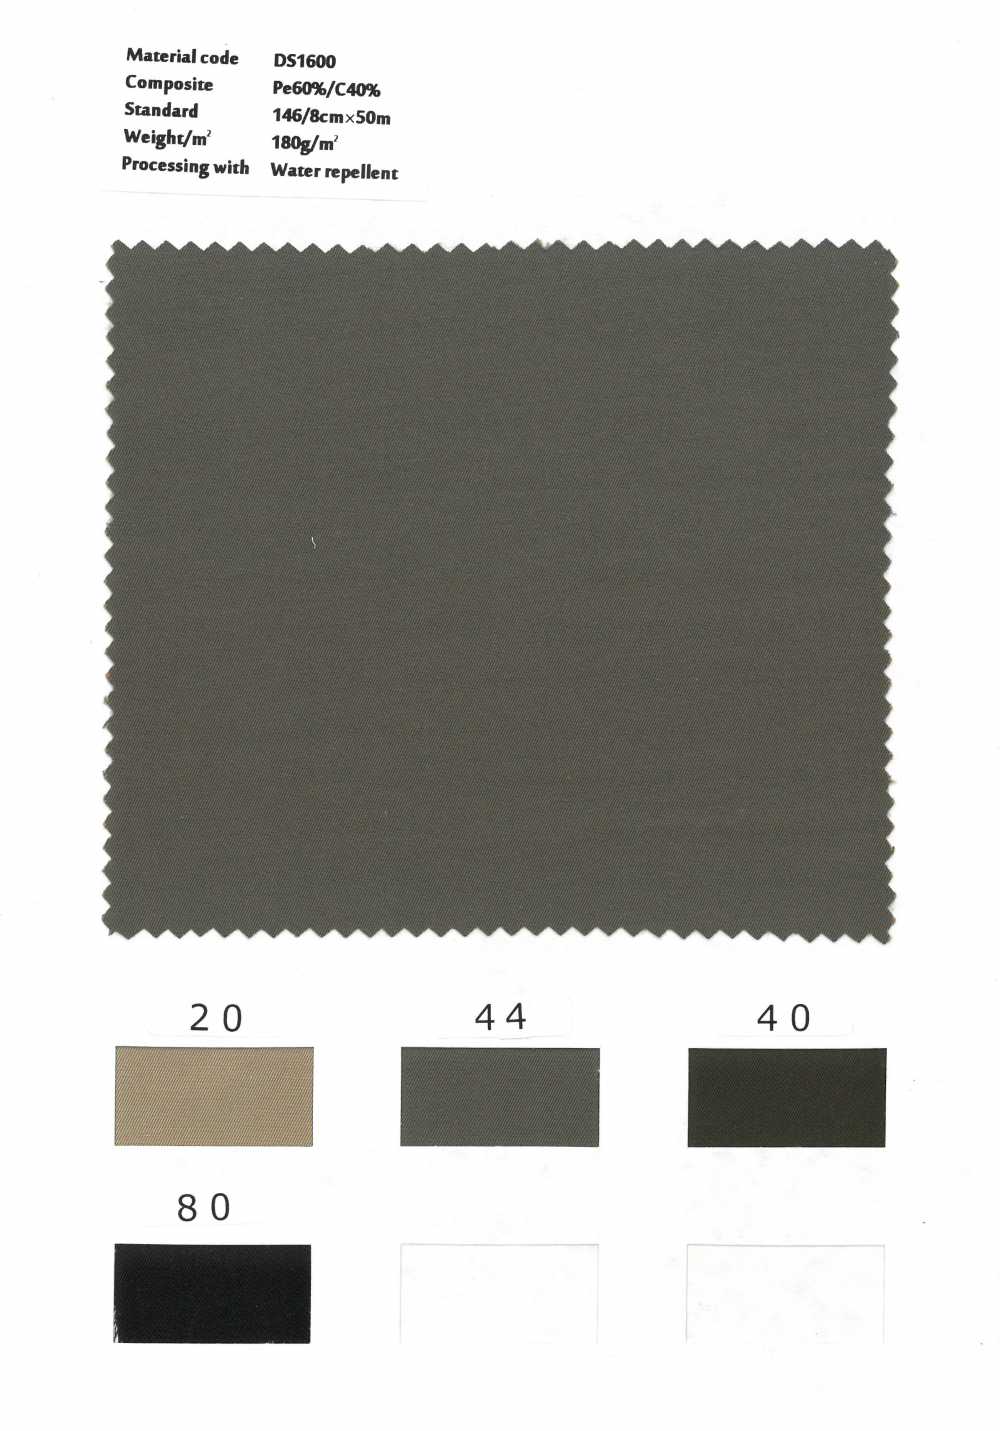 DS1600 Finitura Idrorepellente In Gabardine Tinta In Filo Di Cotone Poliestere[Tessile / Tessuto] Styletex